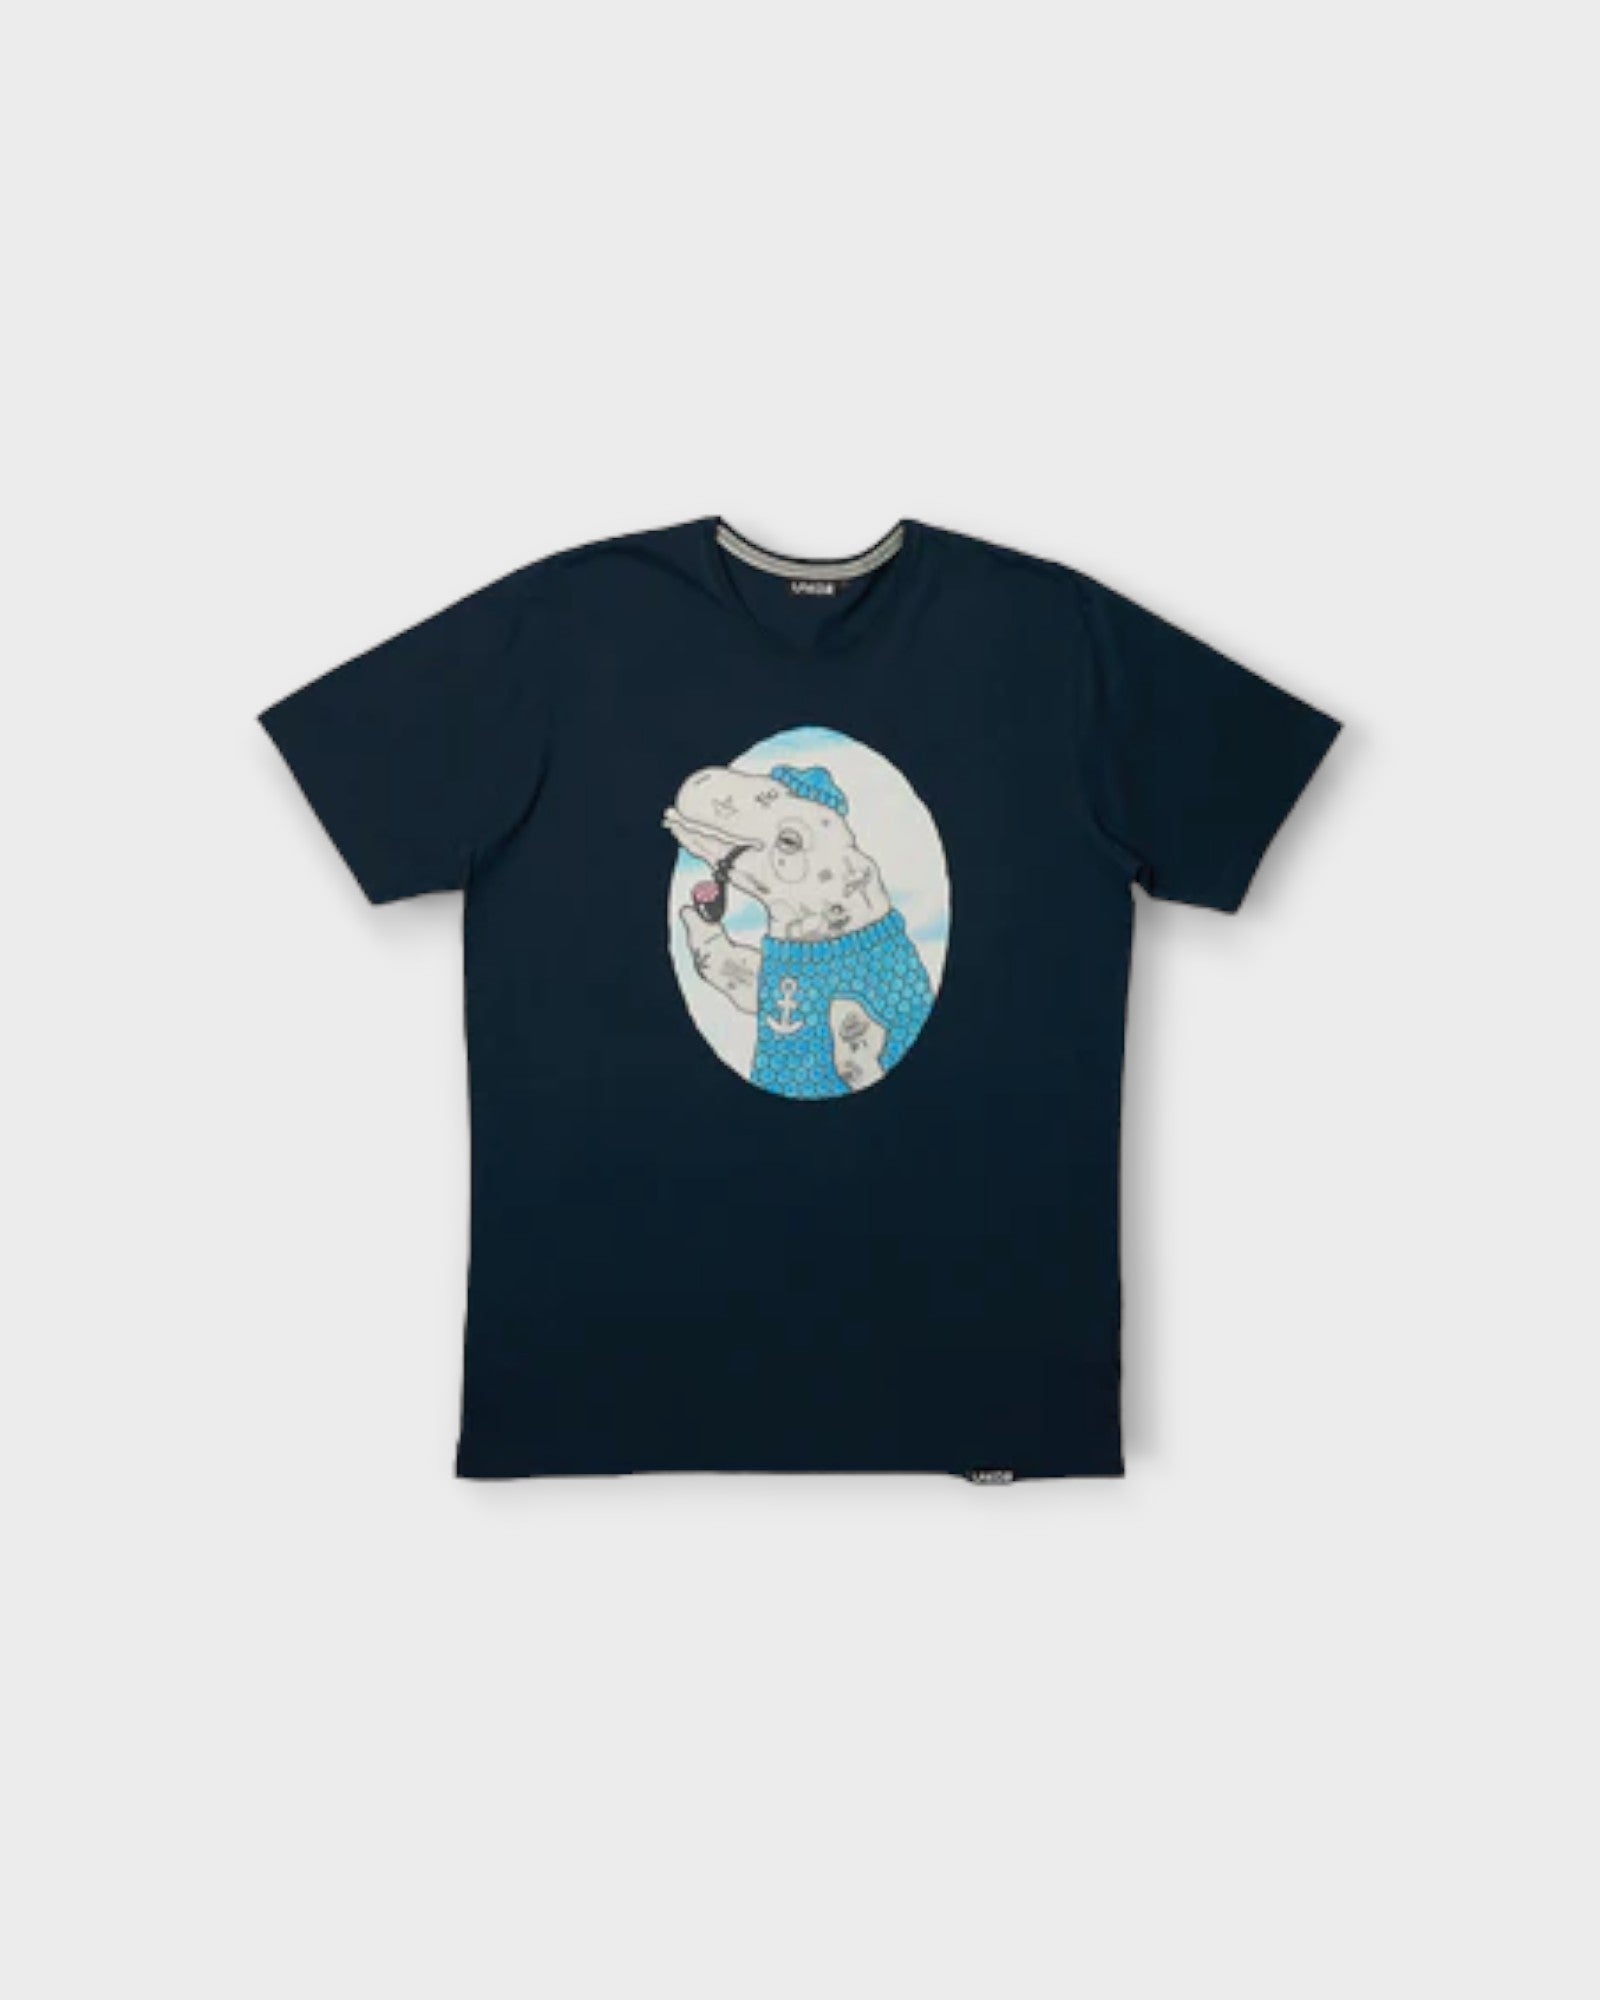 Badass Beluga T-shirt Blueberry - Blå Printet Lakor Soulwear T-shirt til Mænd. Her set forfra.